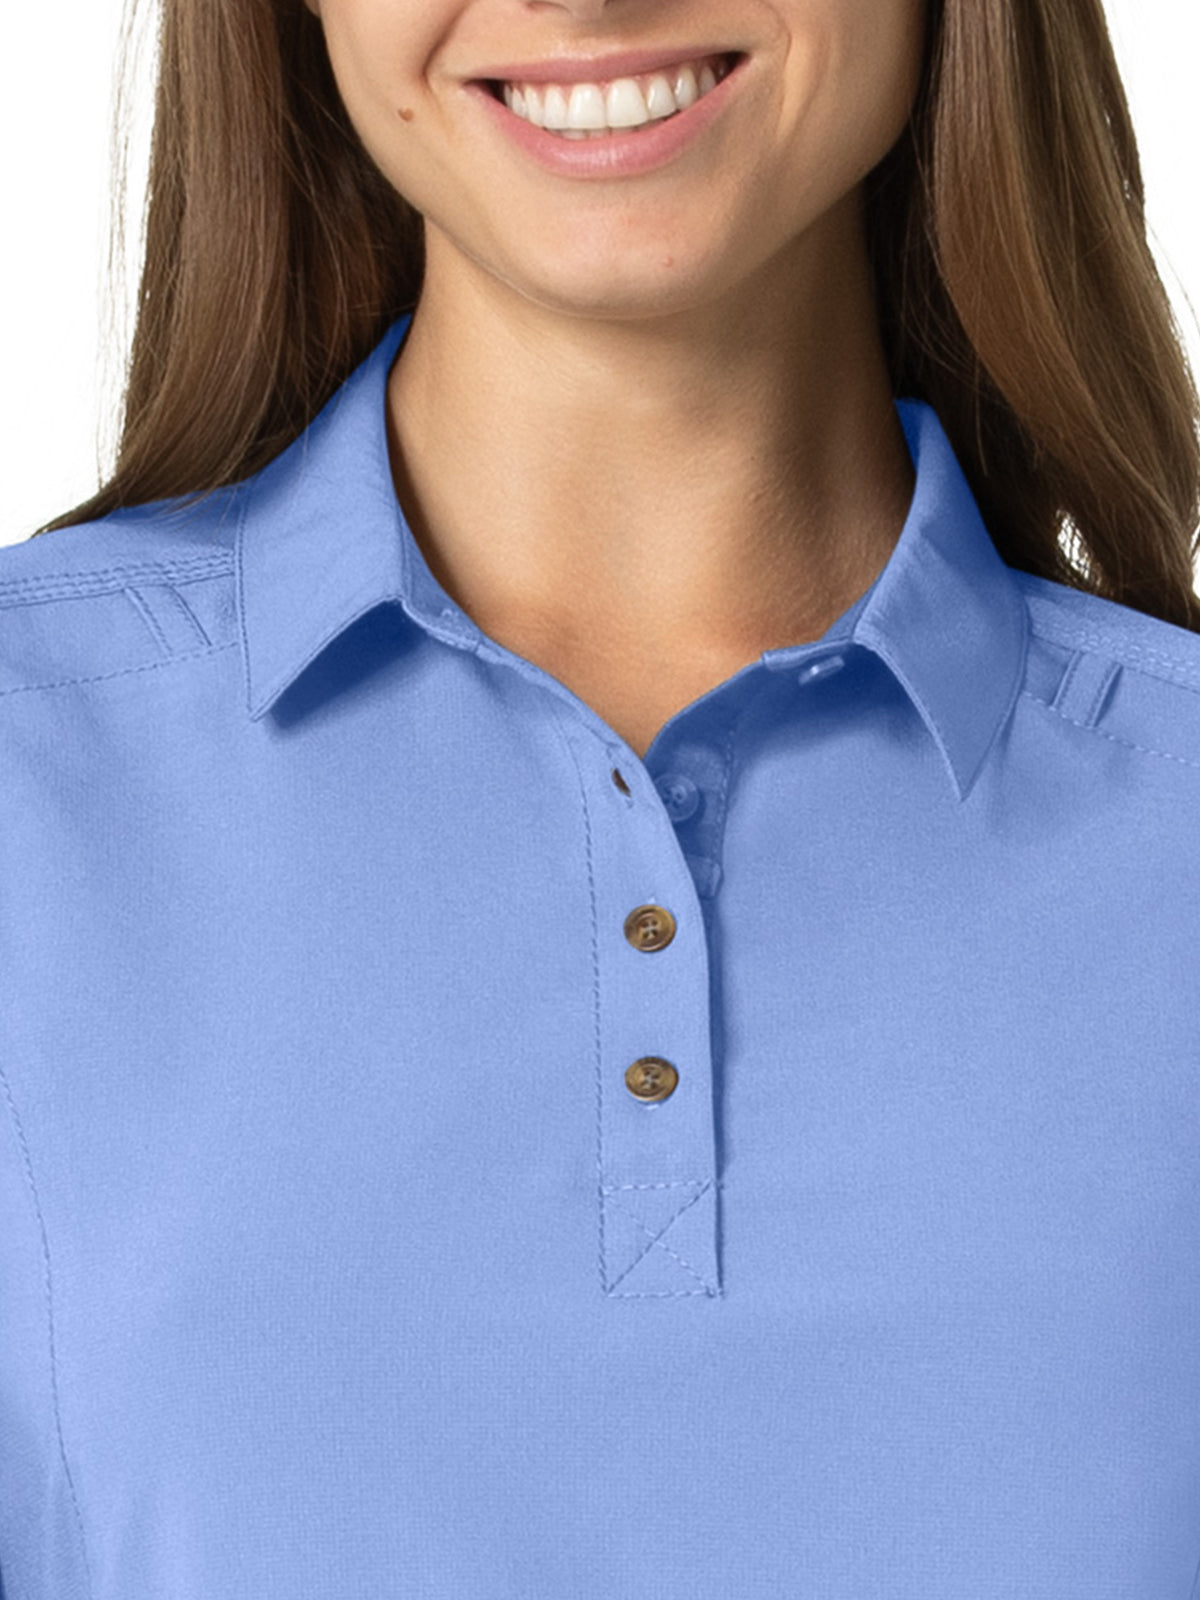 Women's Modern Fit Convertible Sleeve Top